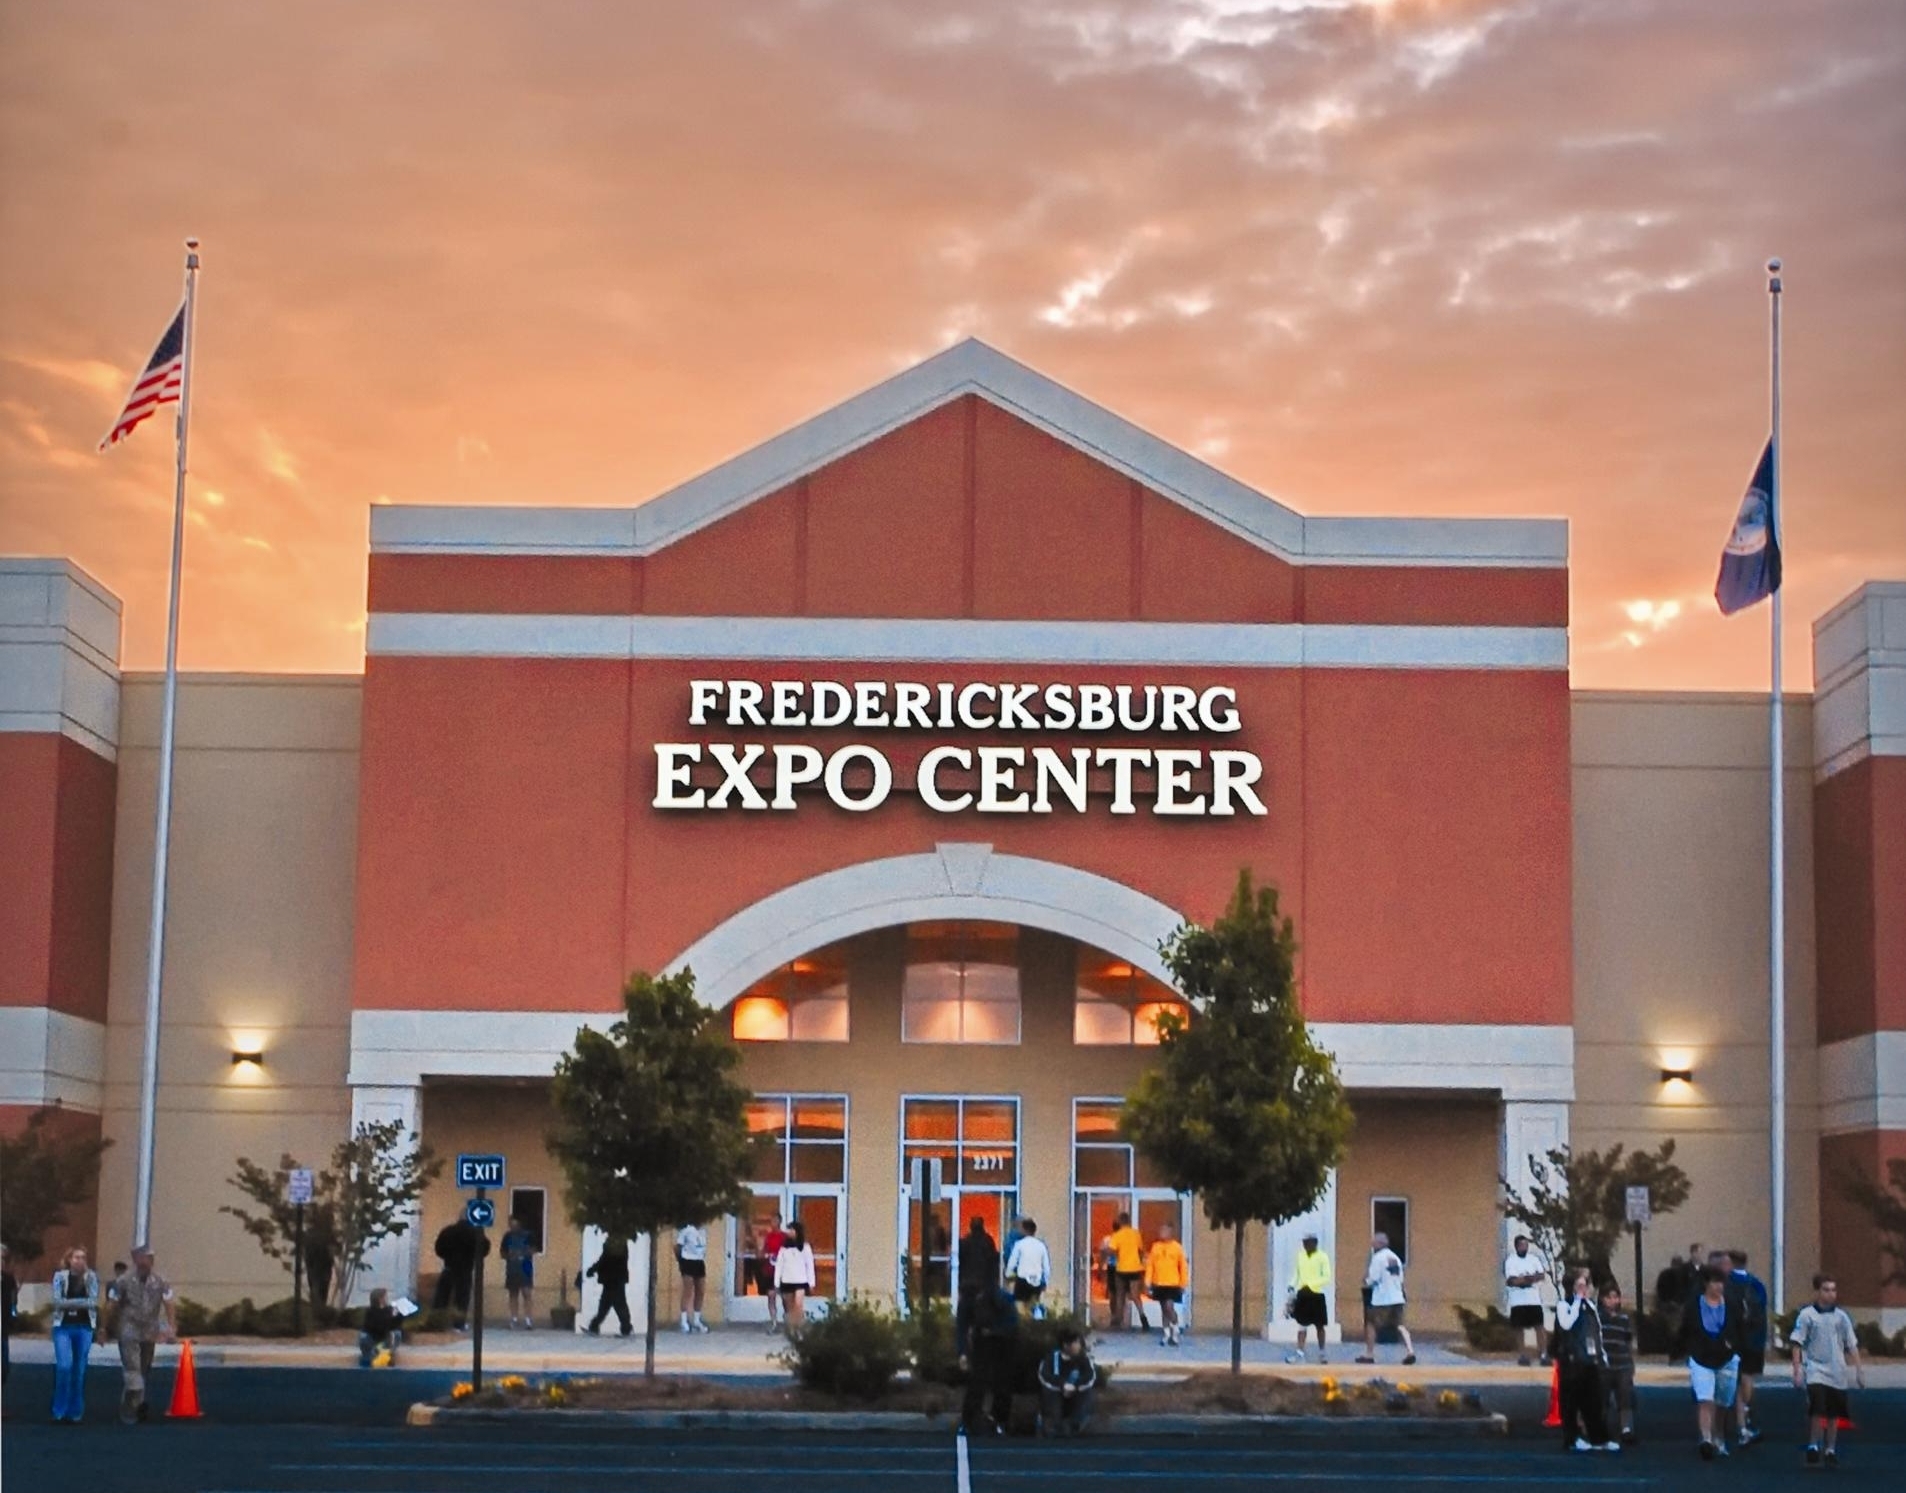 Fredericksburg Expo Center gets new name Fredericksburg, VA